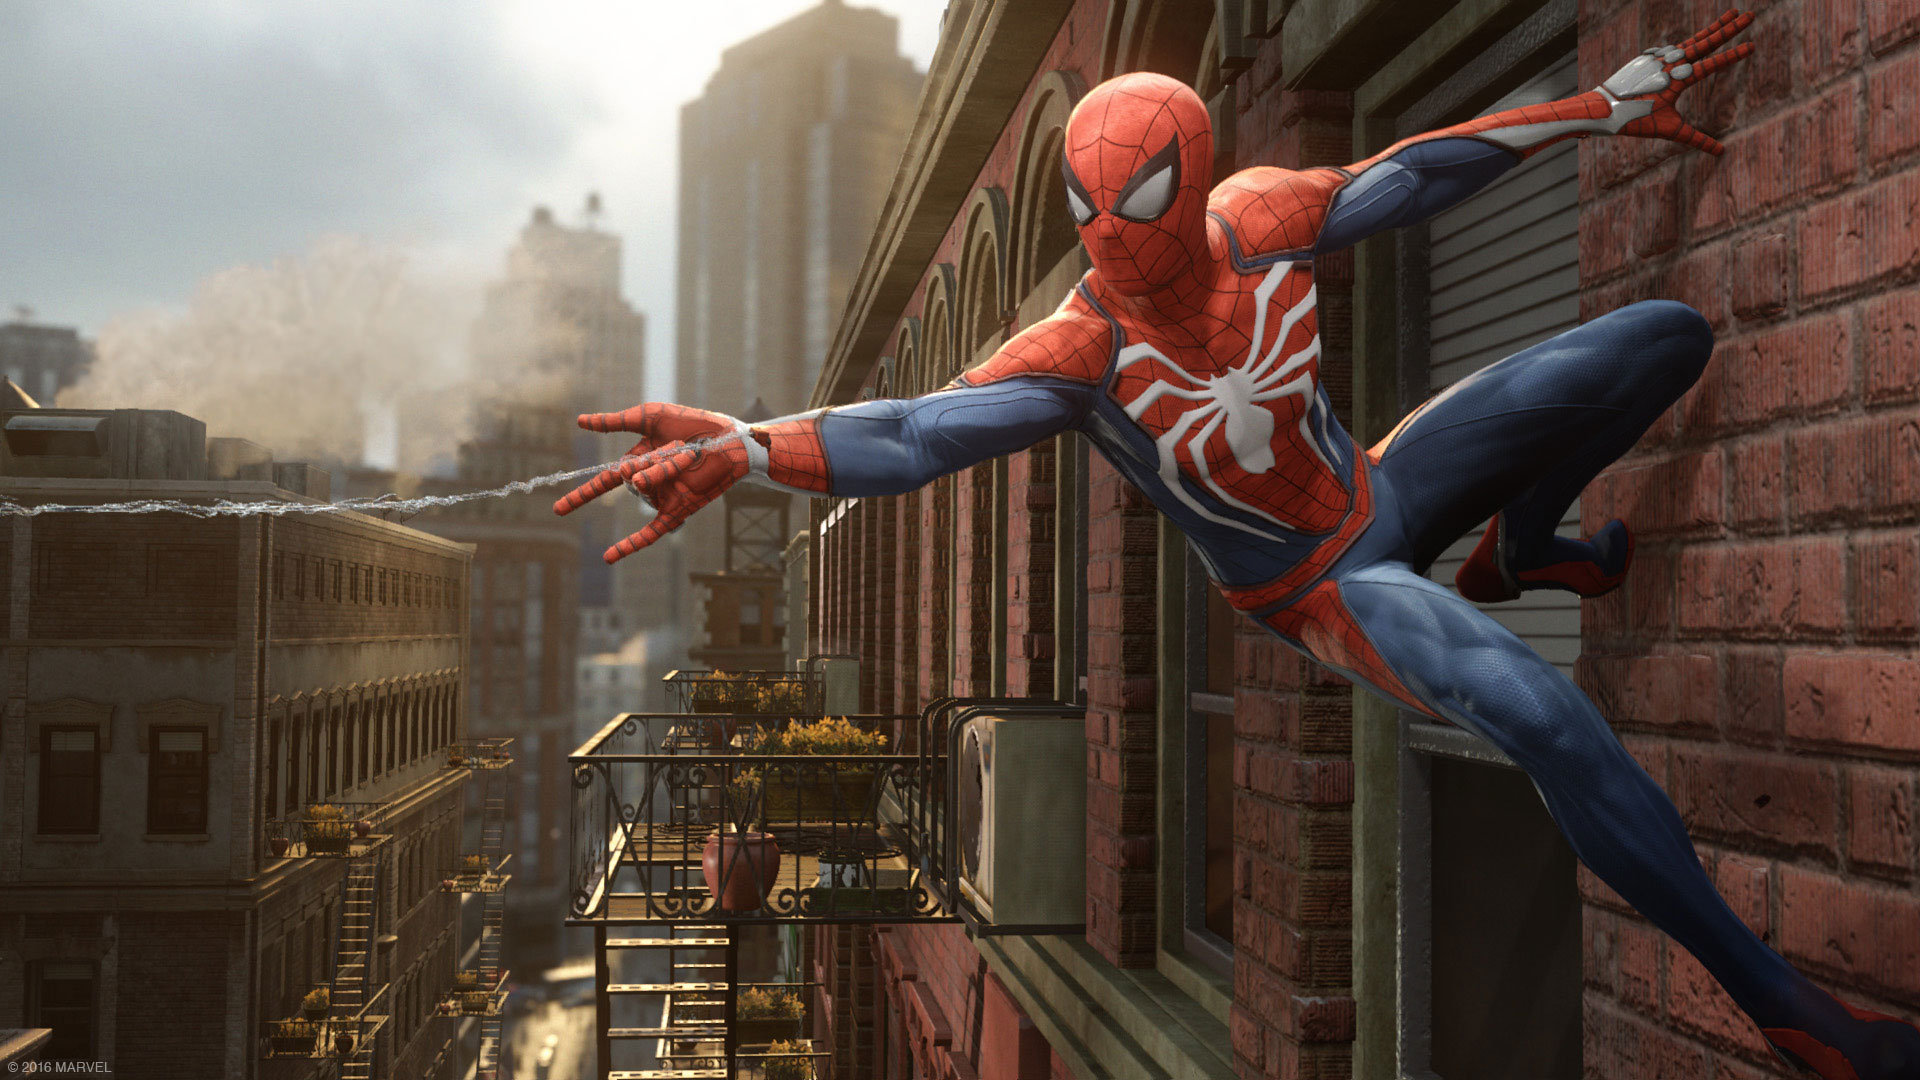 Spider-Man PS4 uscirà nel giugno 2018? Intanto ecco alcuni dettagli sulla trama...